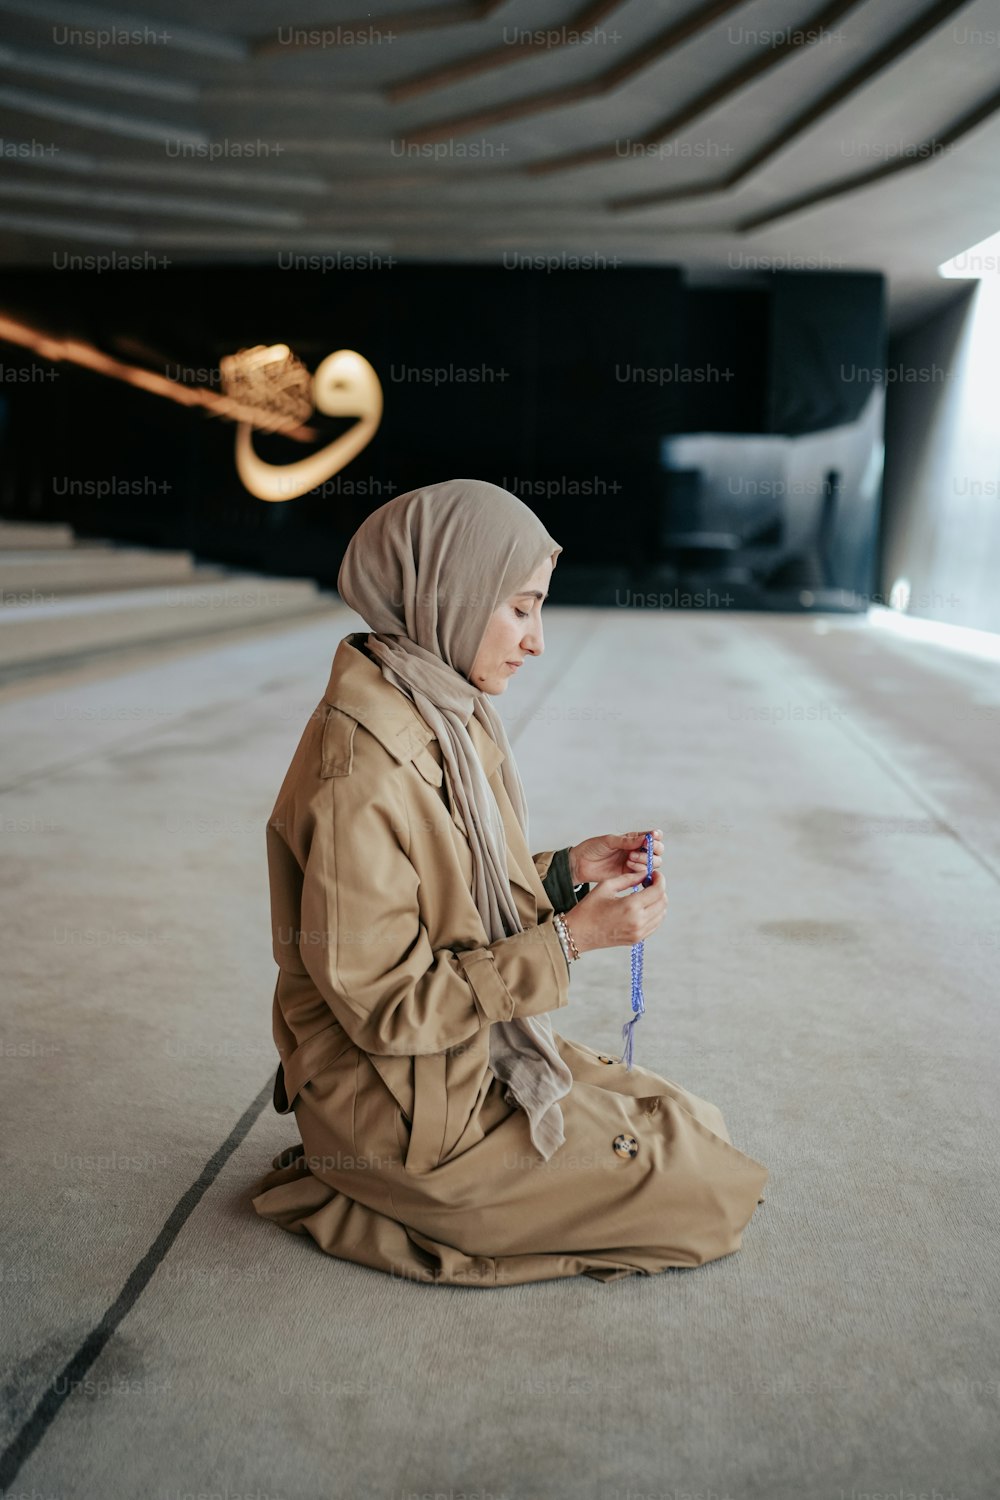 Eine Frau mit Hijab sitzt auf dem Boden